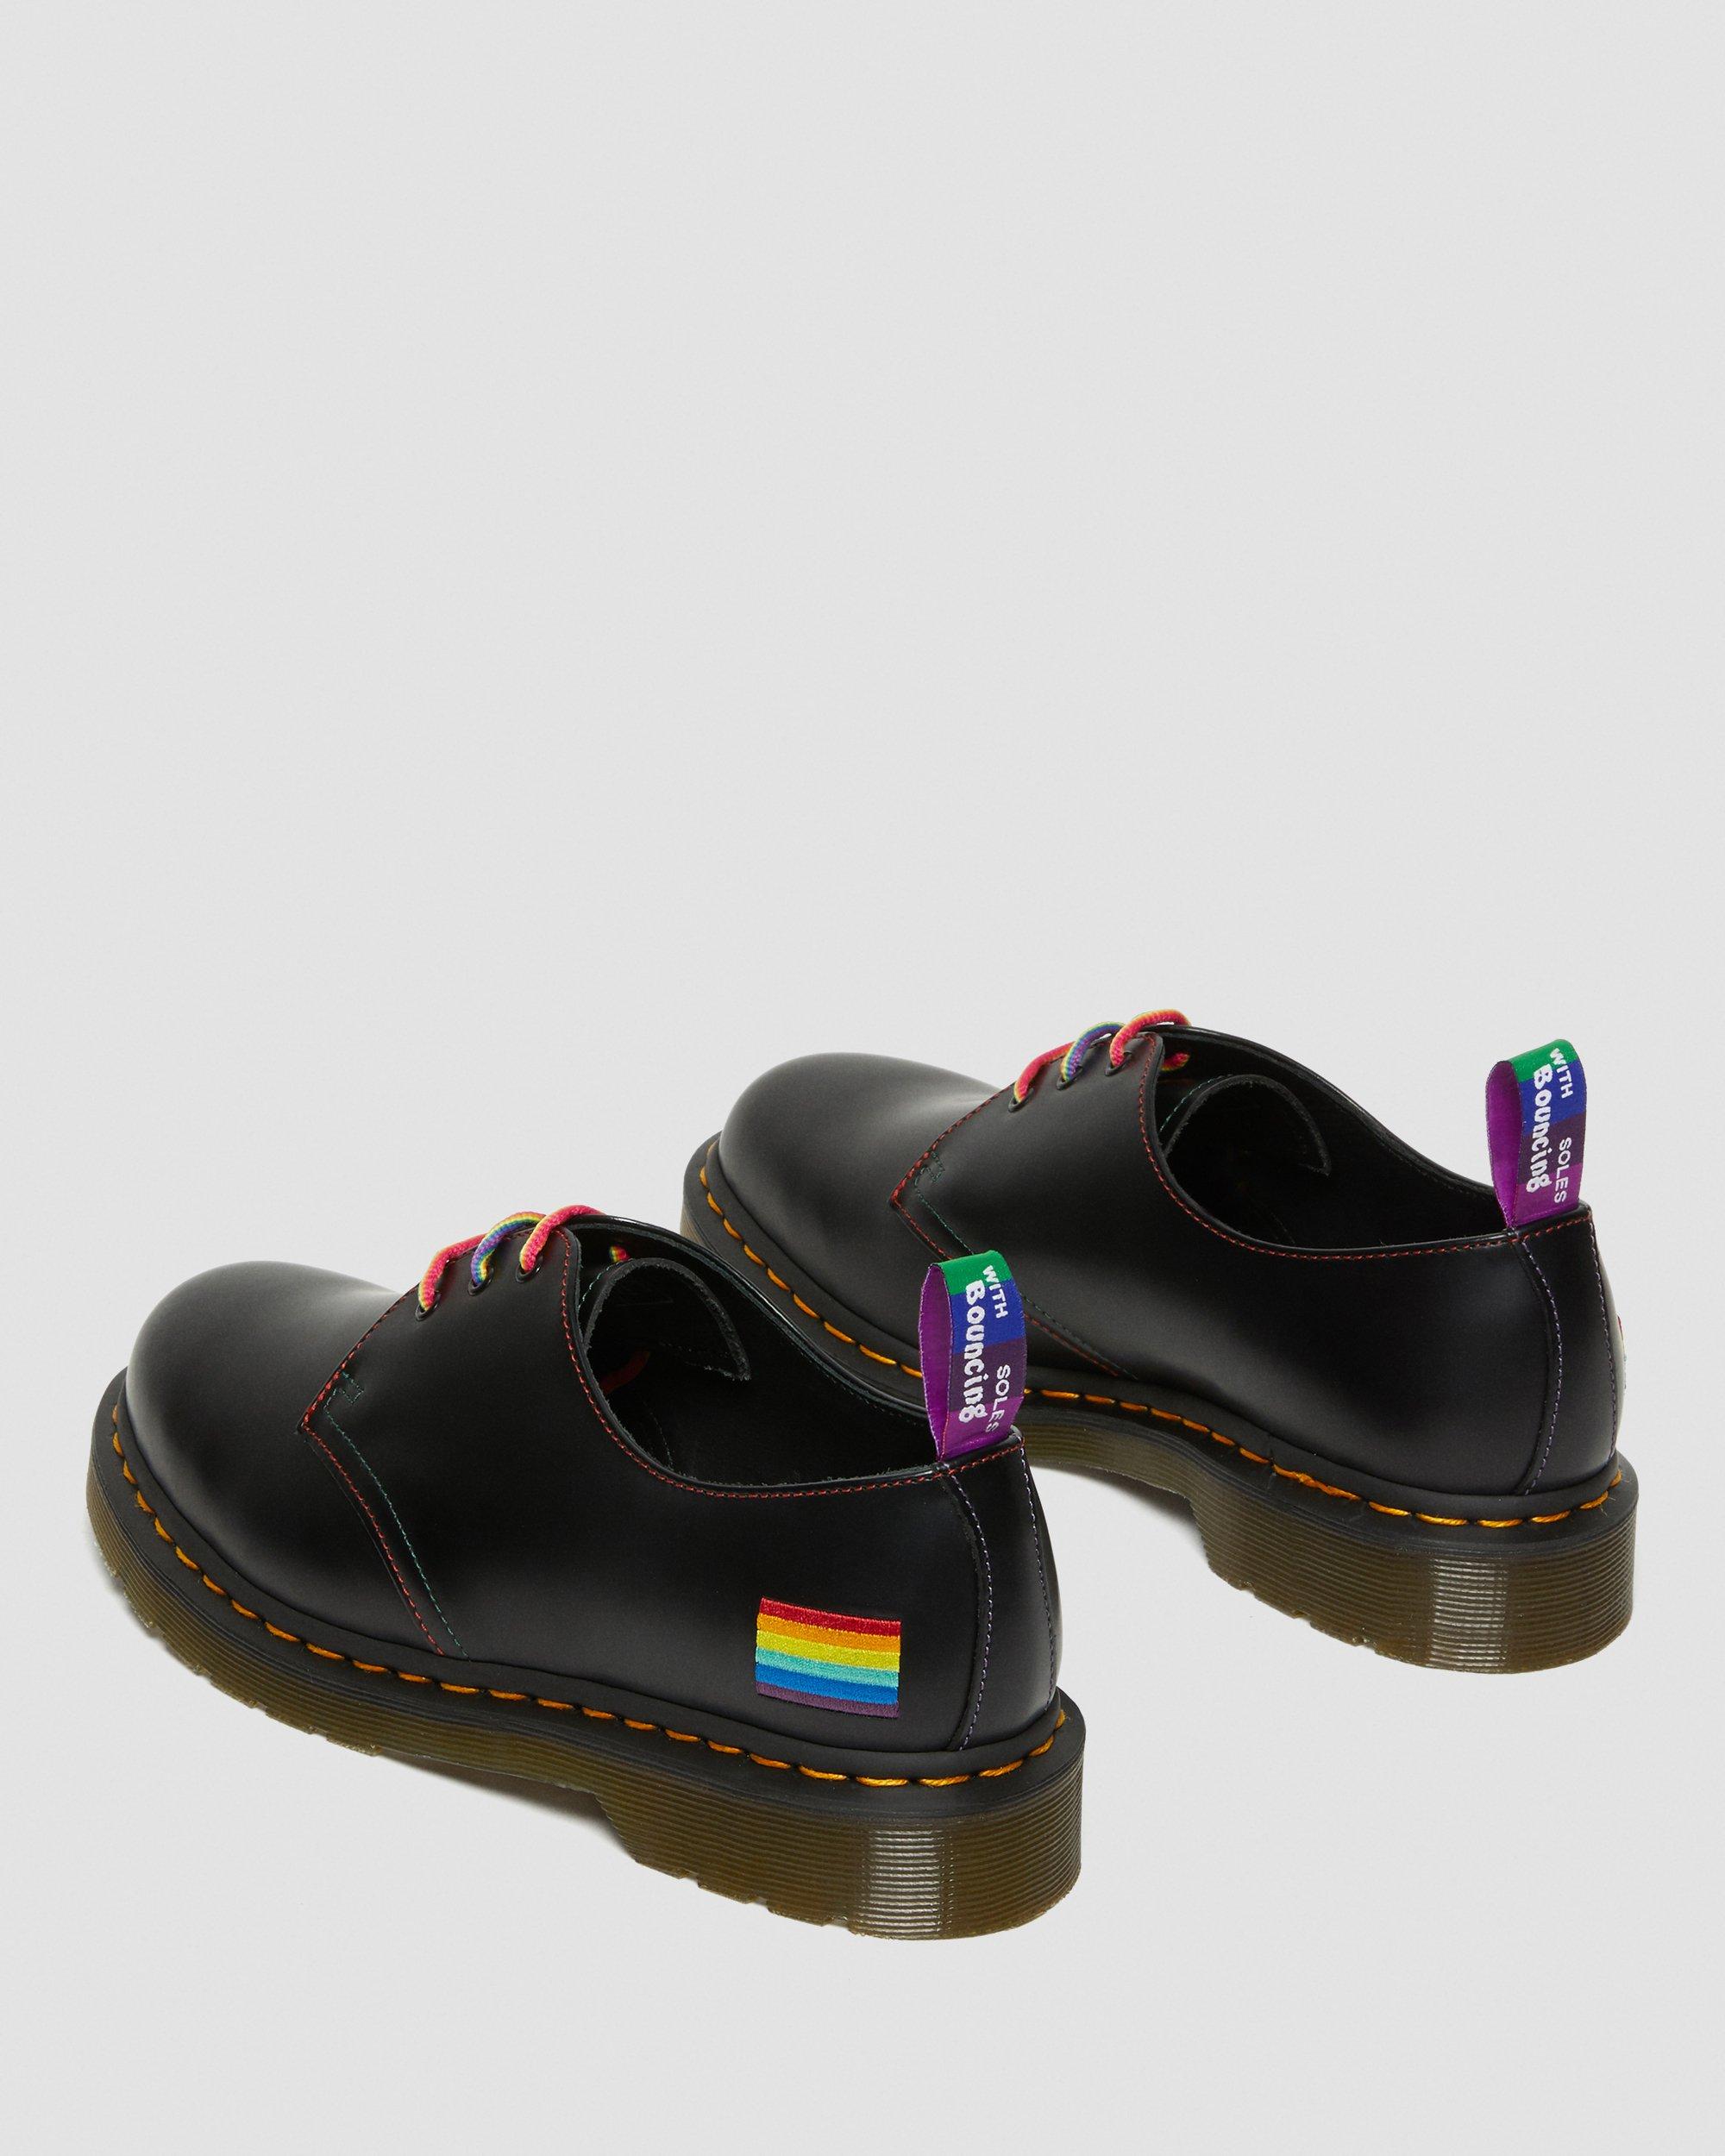 Dr MARTENS 1461 Shoes For PRIDE Black Smooth Rainbow UK 9.5 10 EU 44 45 RARE